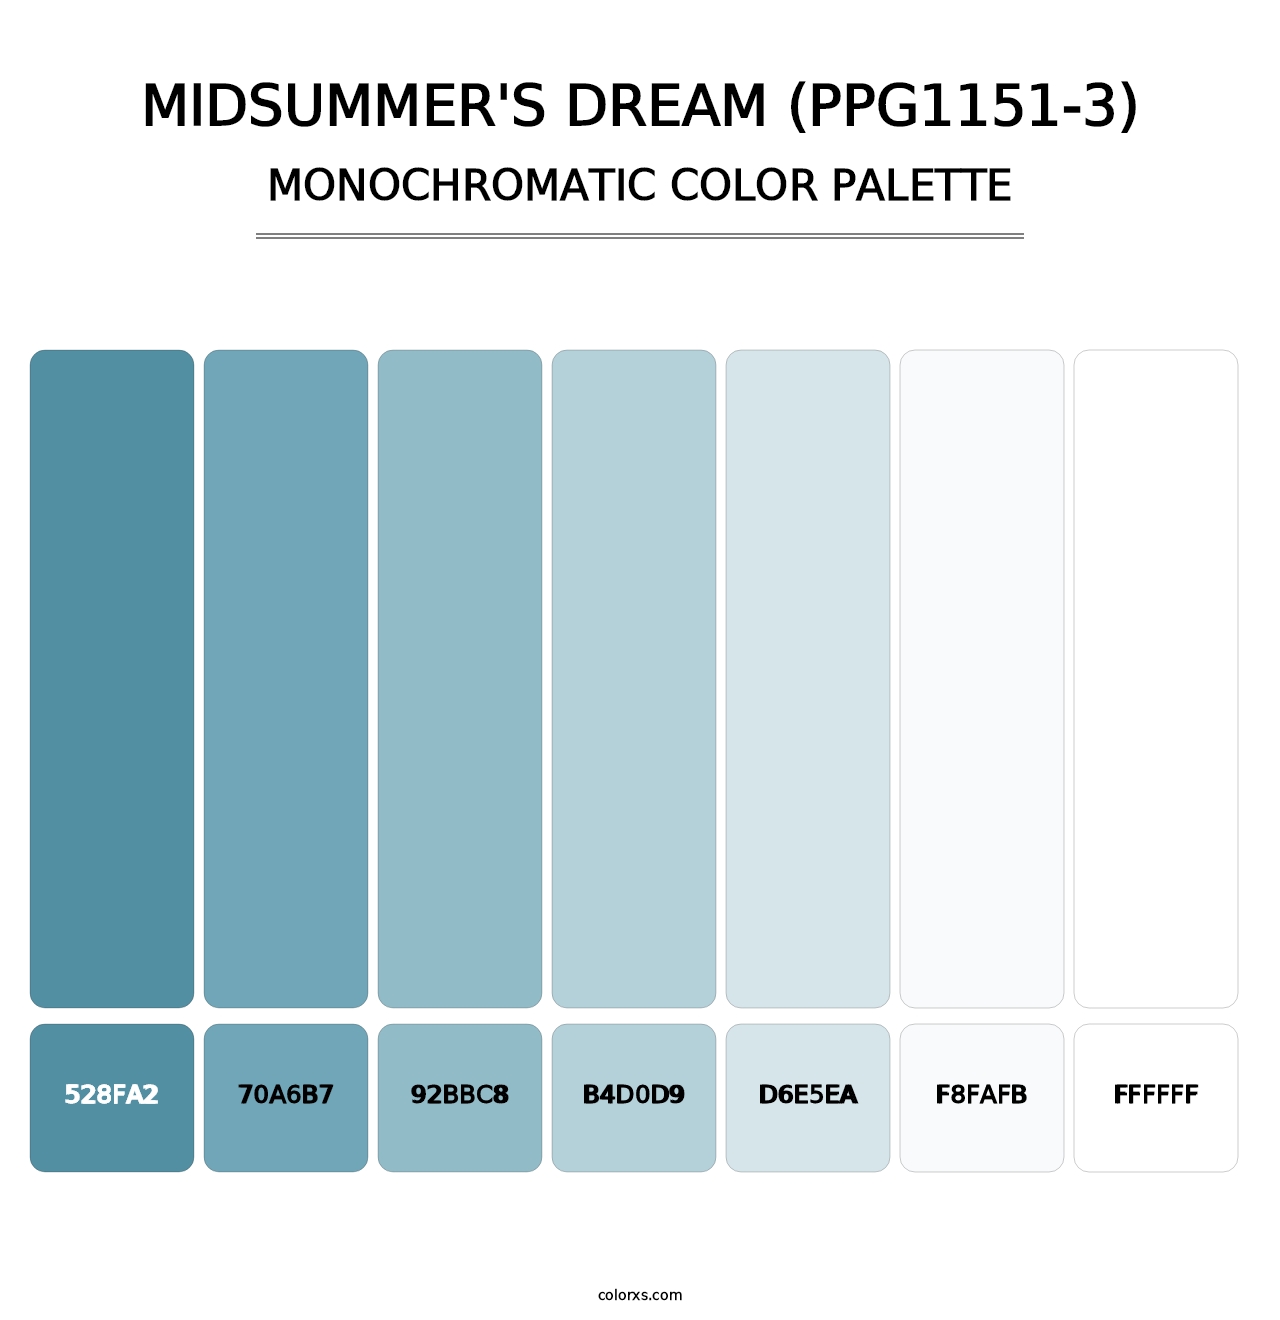 Midsummer's Dream (PPG1151-3) - Monochromatic Color Palette